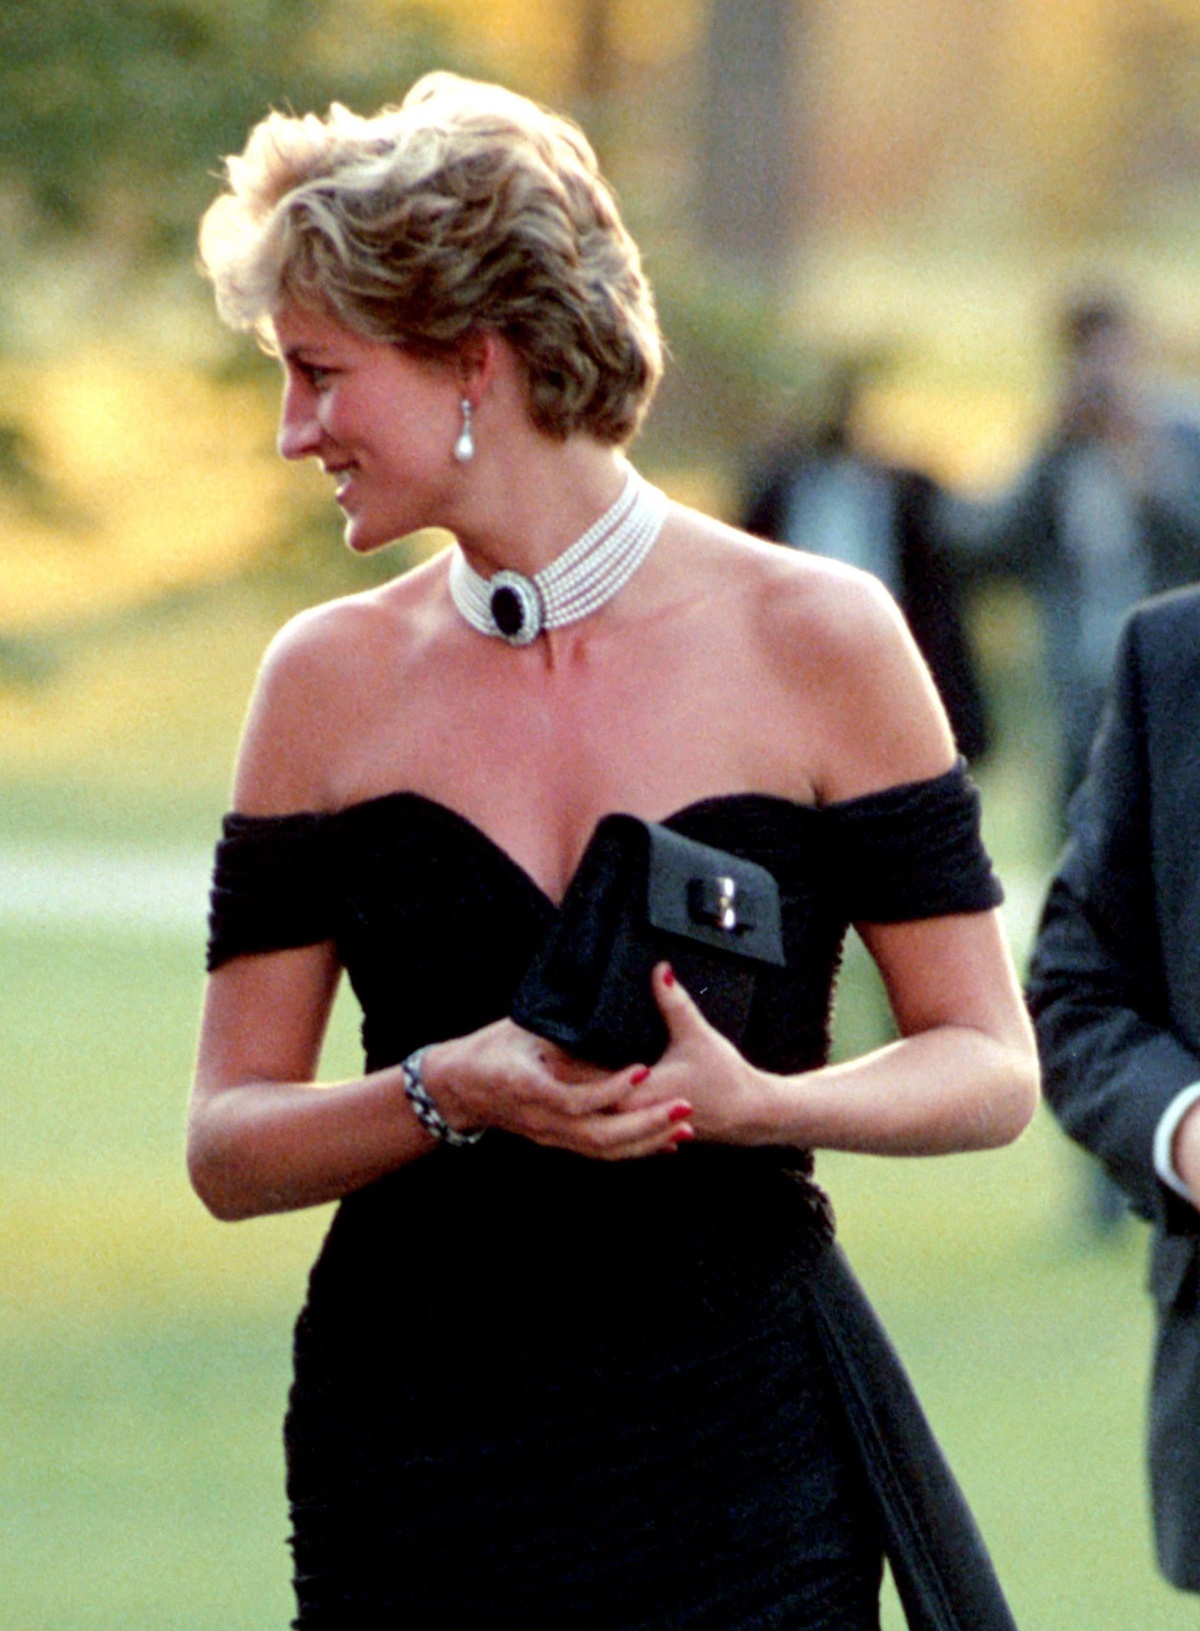 Trang phục Công nương Diana diện quyến rũ, táo bạo hơn so với chuẩn mực trang phục được đặt ra đối với các thành viên Hoàng gia Anh. Điều này cách chứng minh sự độc lập và dám khác biệt của bà.